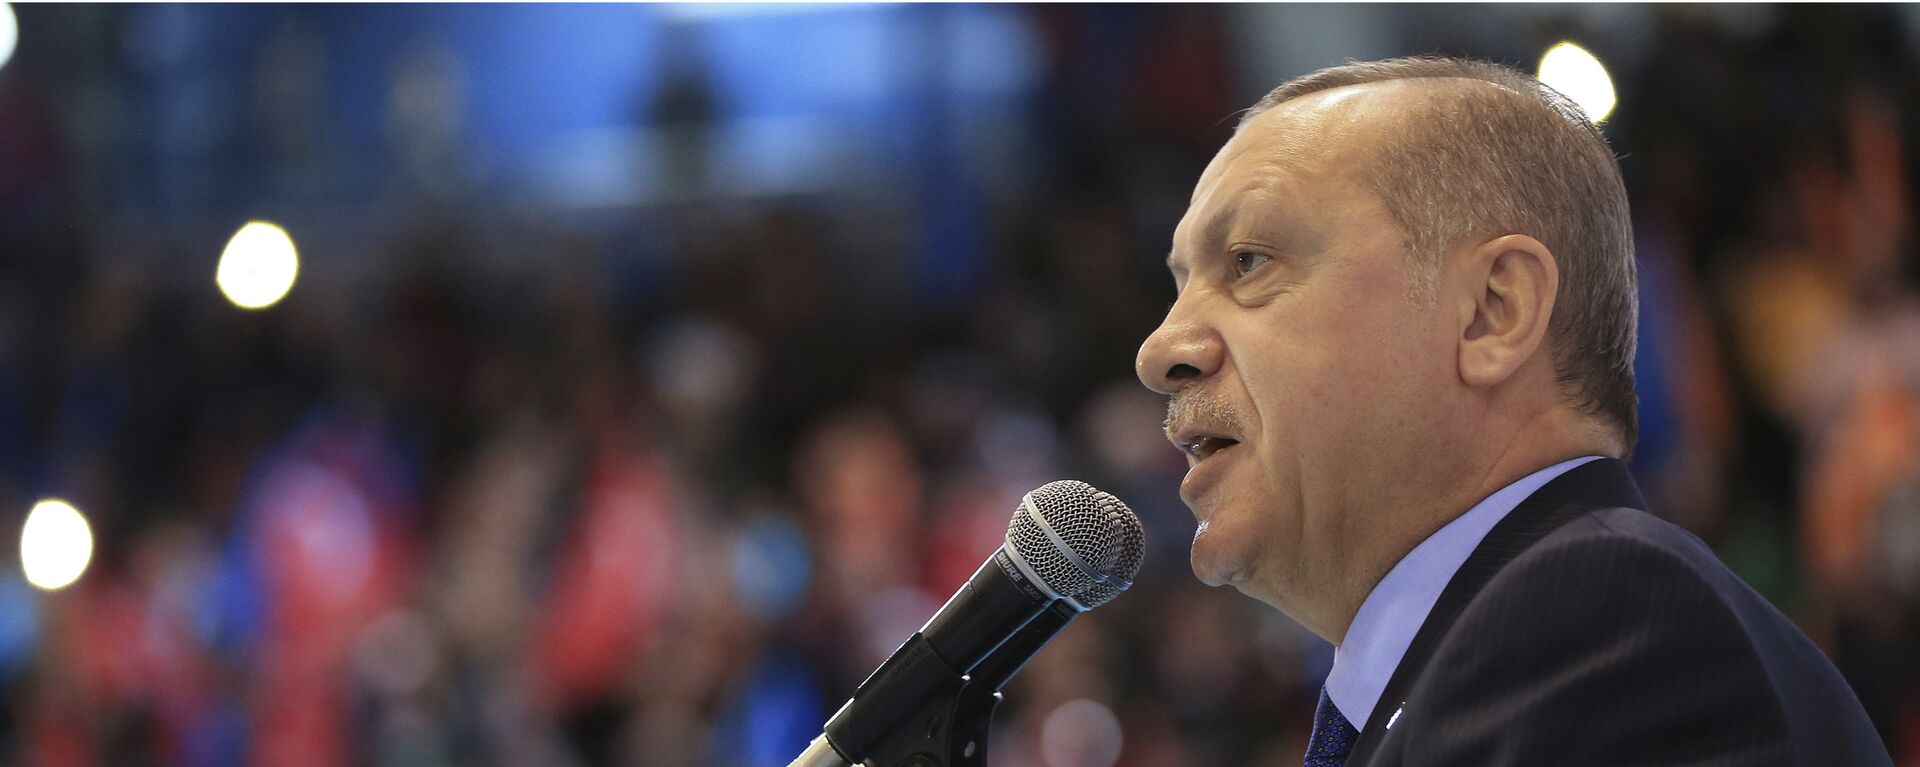 Presidente turco, Recep Tayyip Erdogan, fala aos membros do seu partido, em 24 de março de 2018 - Sputnik Brasil, 1920, 19.05.2022